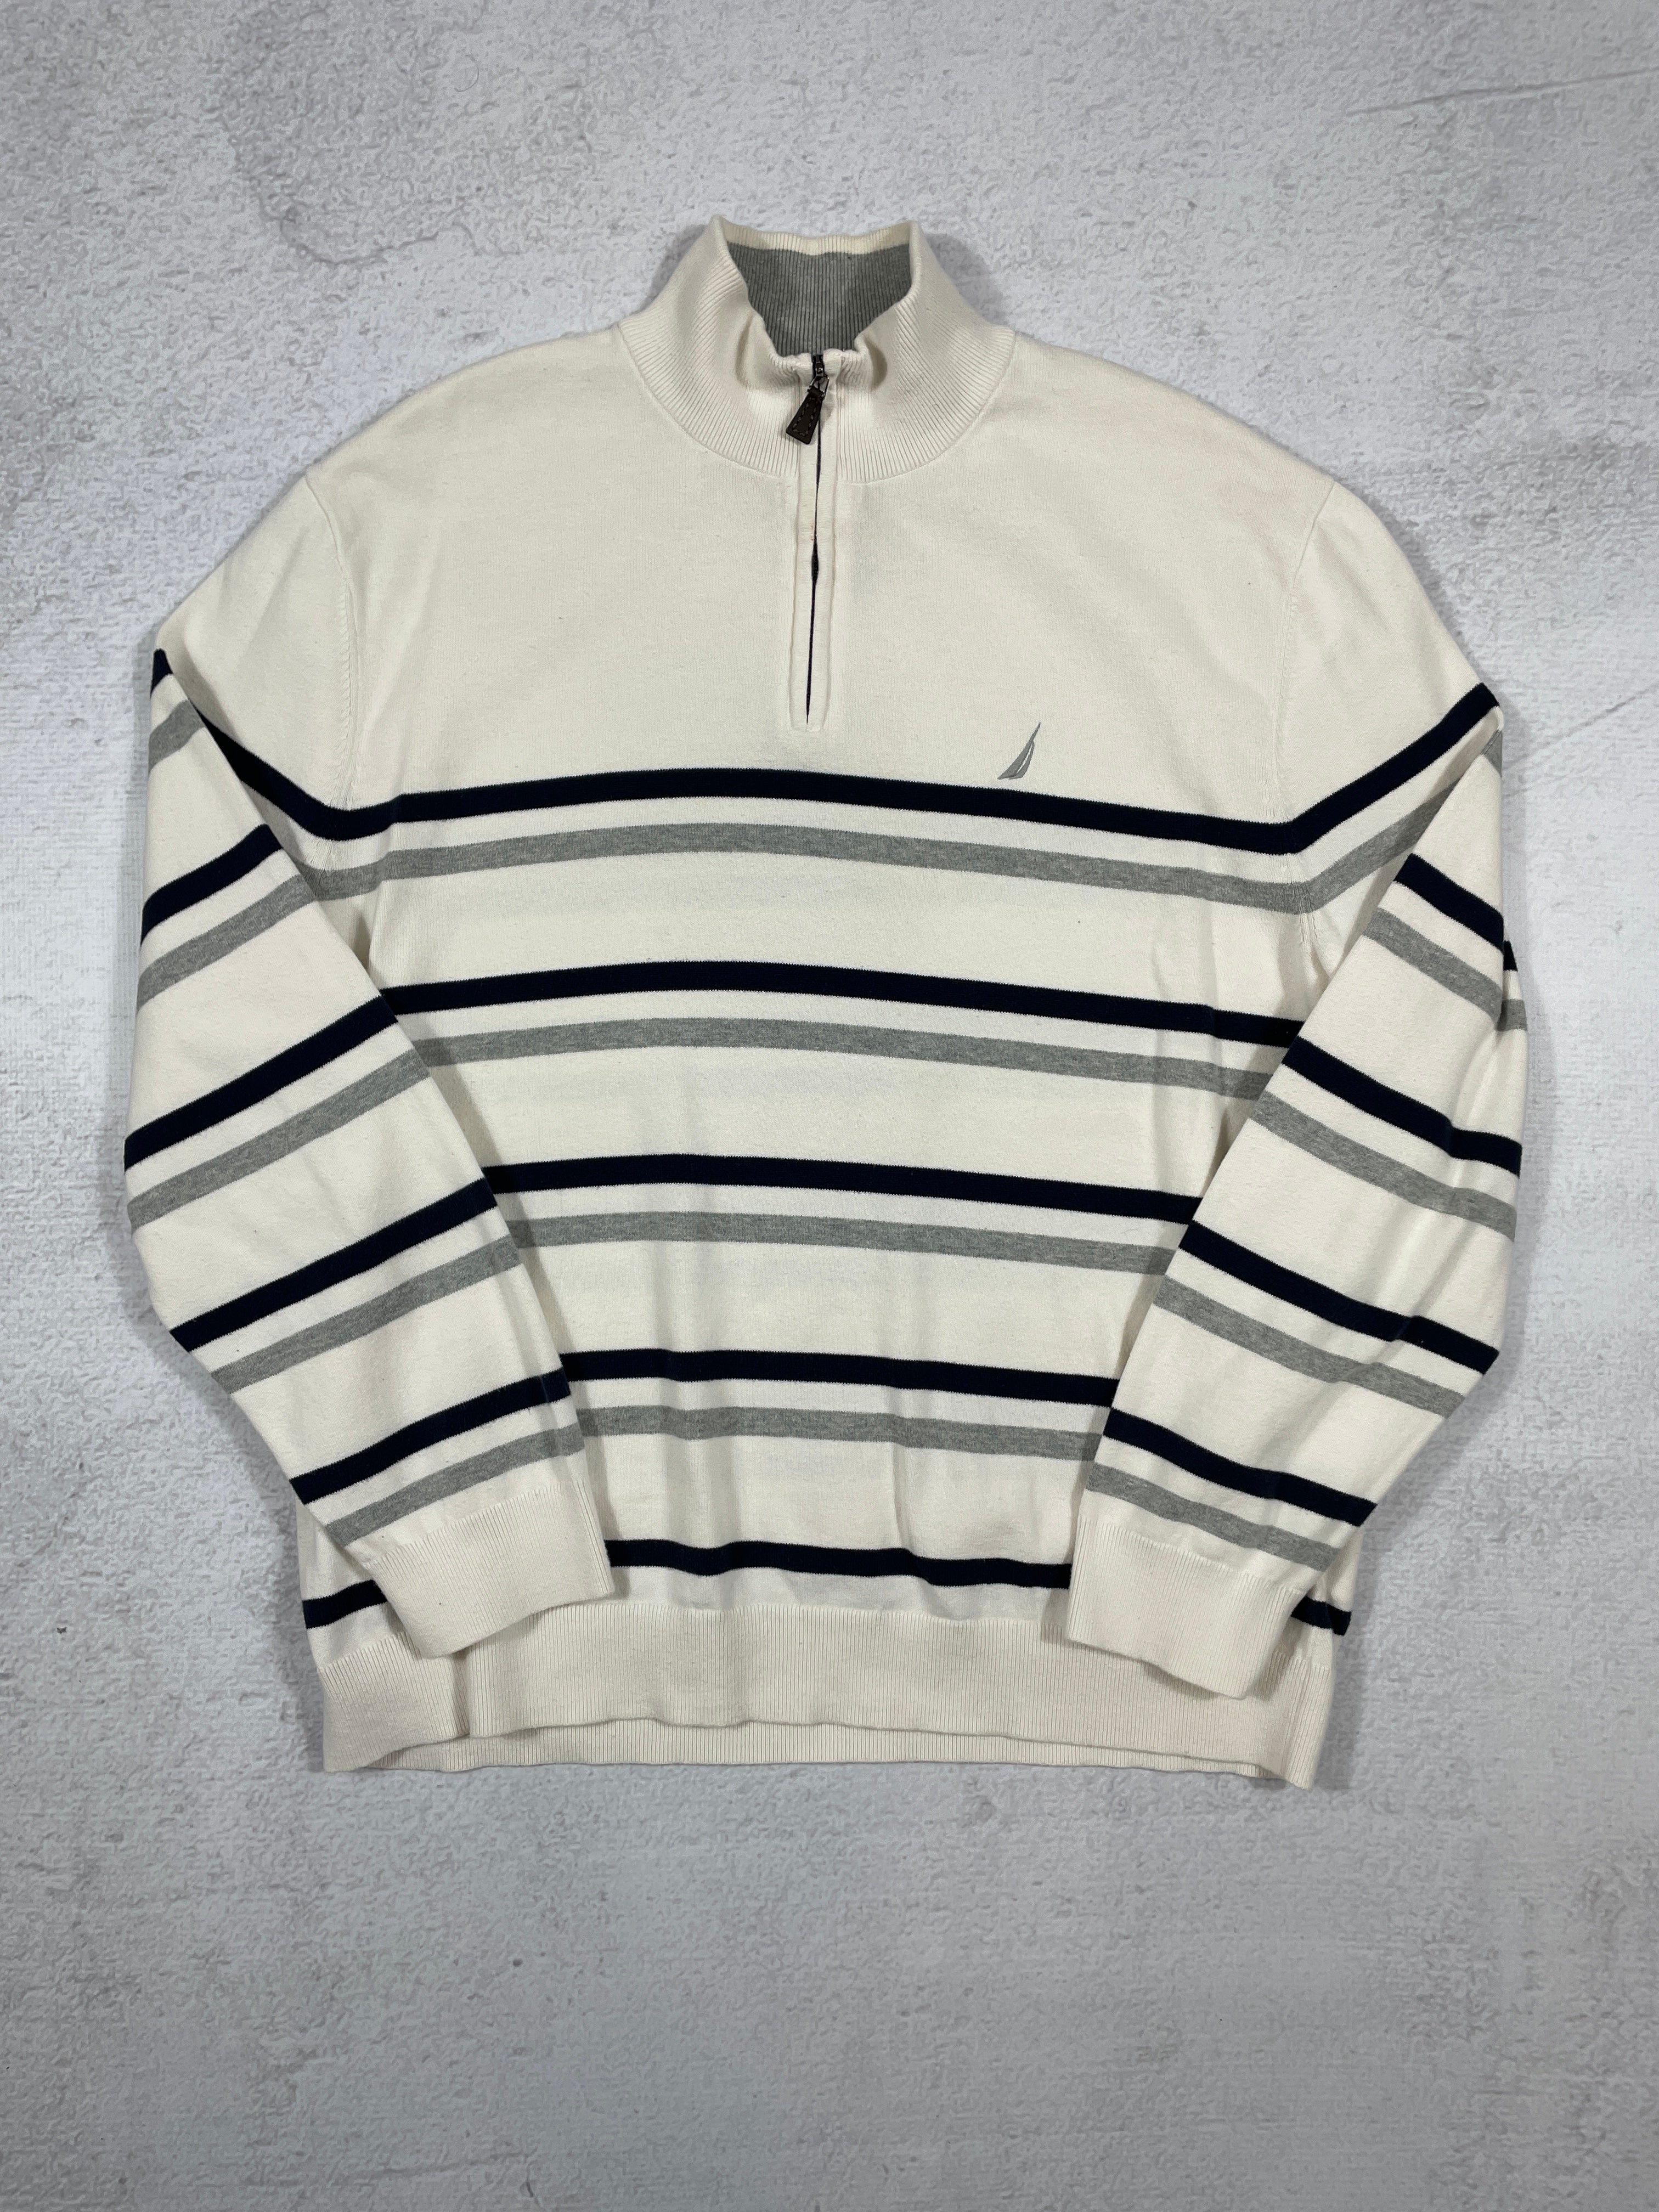 Vintage Nautica 1/4 Zip Sweatshirt - Men's XL